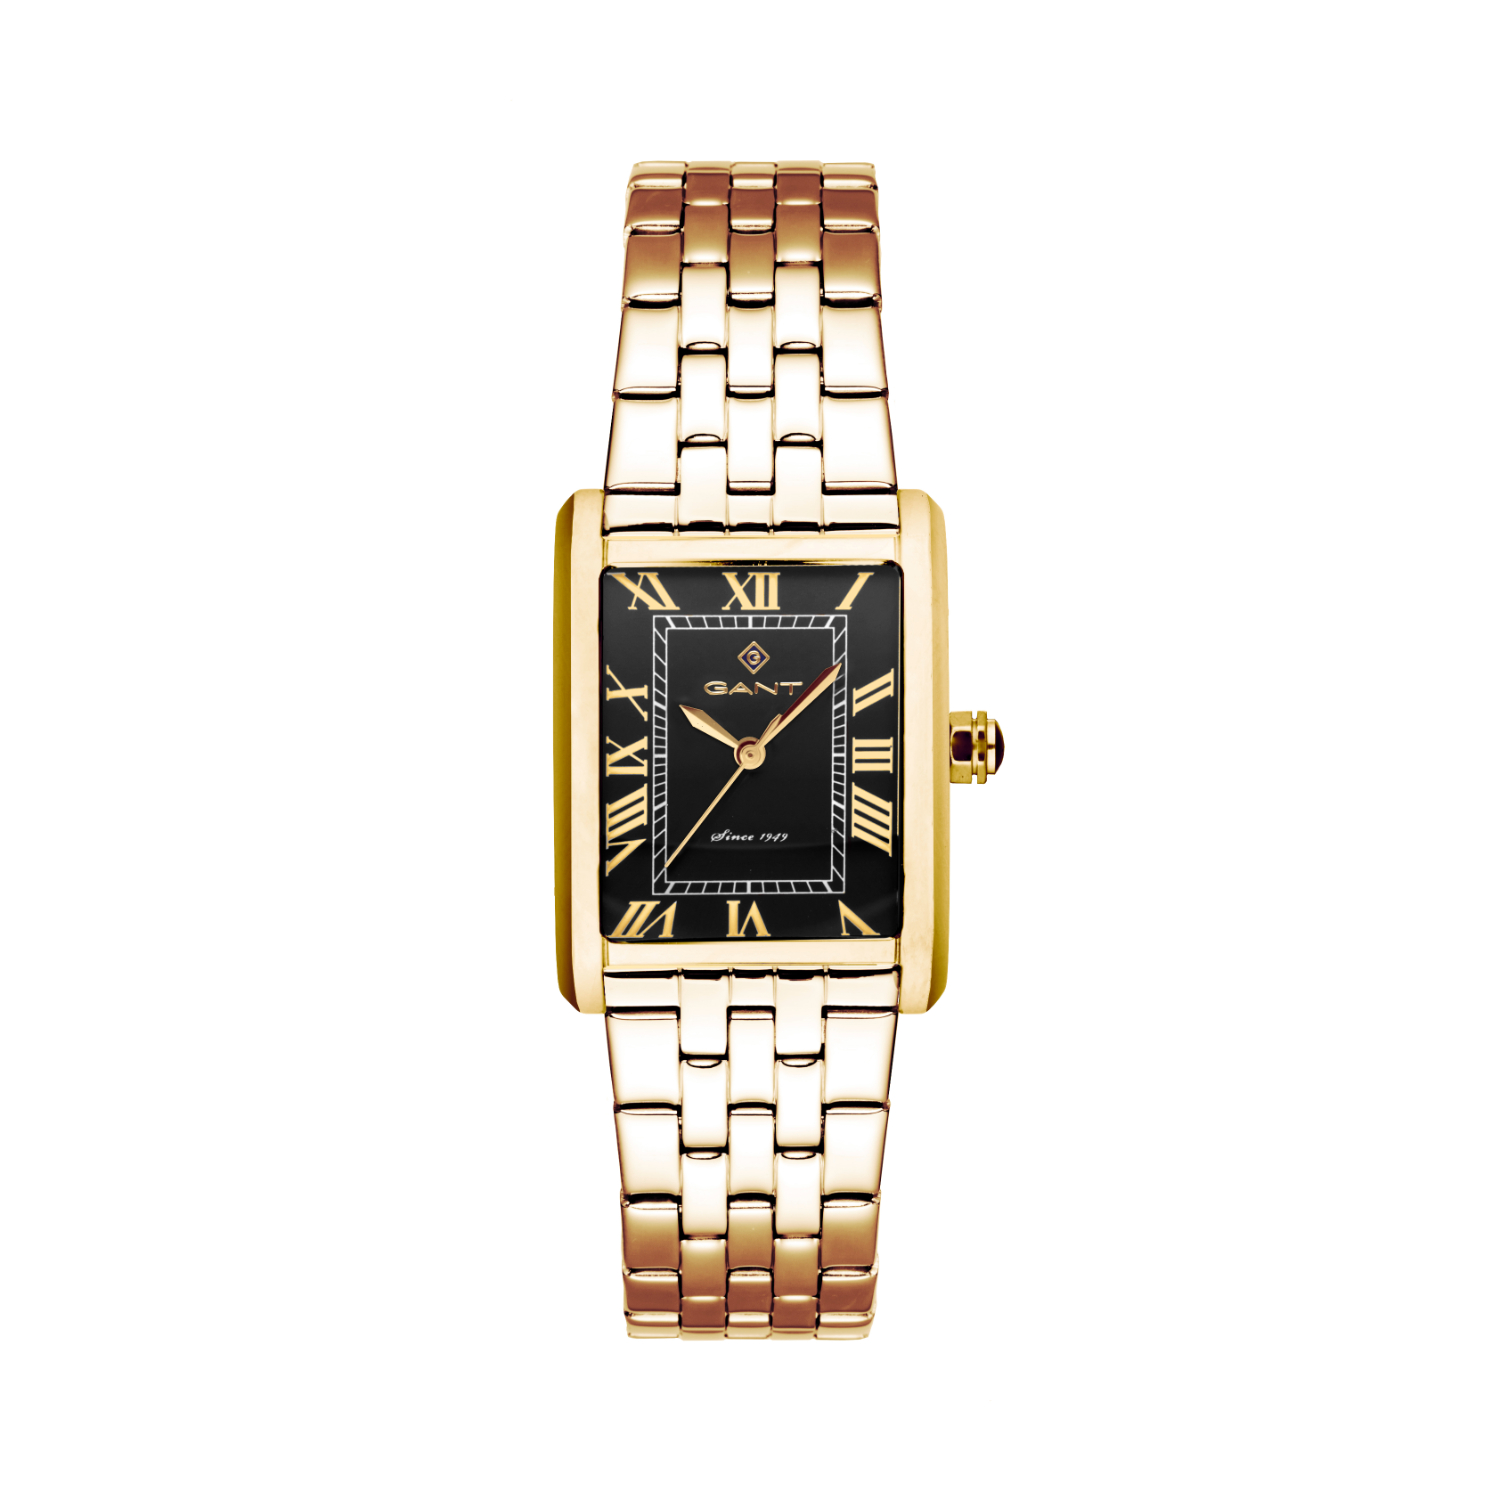 Γυναικείο ρολόι Gant από χρυσό ανοξείδωτο ατσάλι με μαύρο καντράν και μπρασελέ.